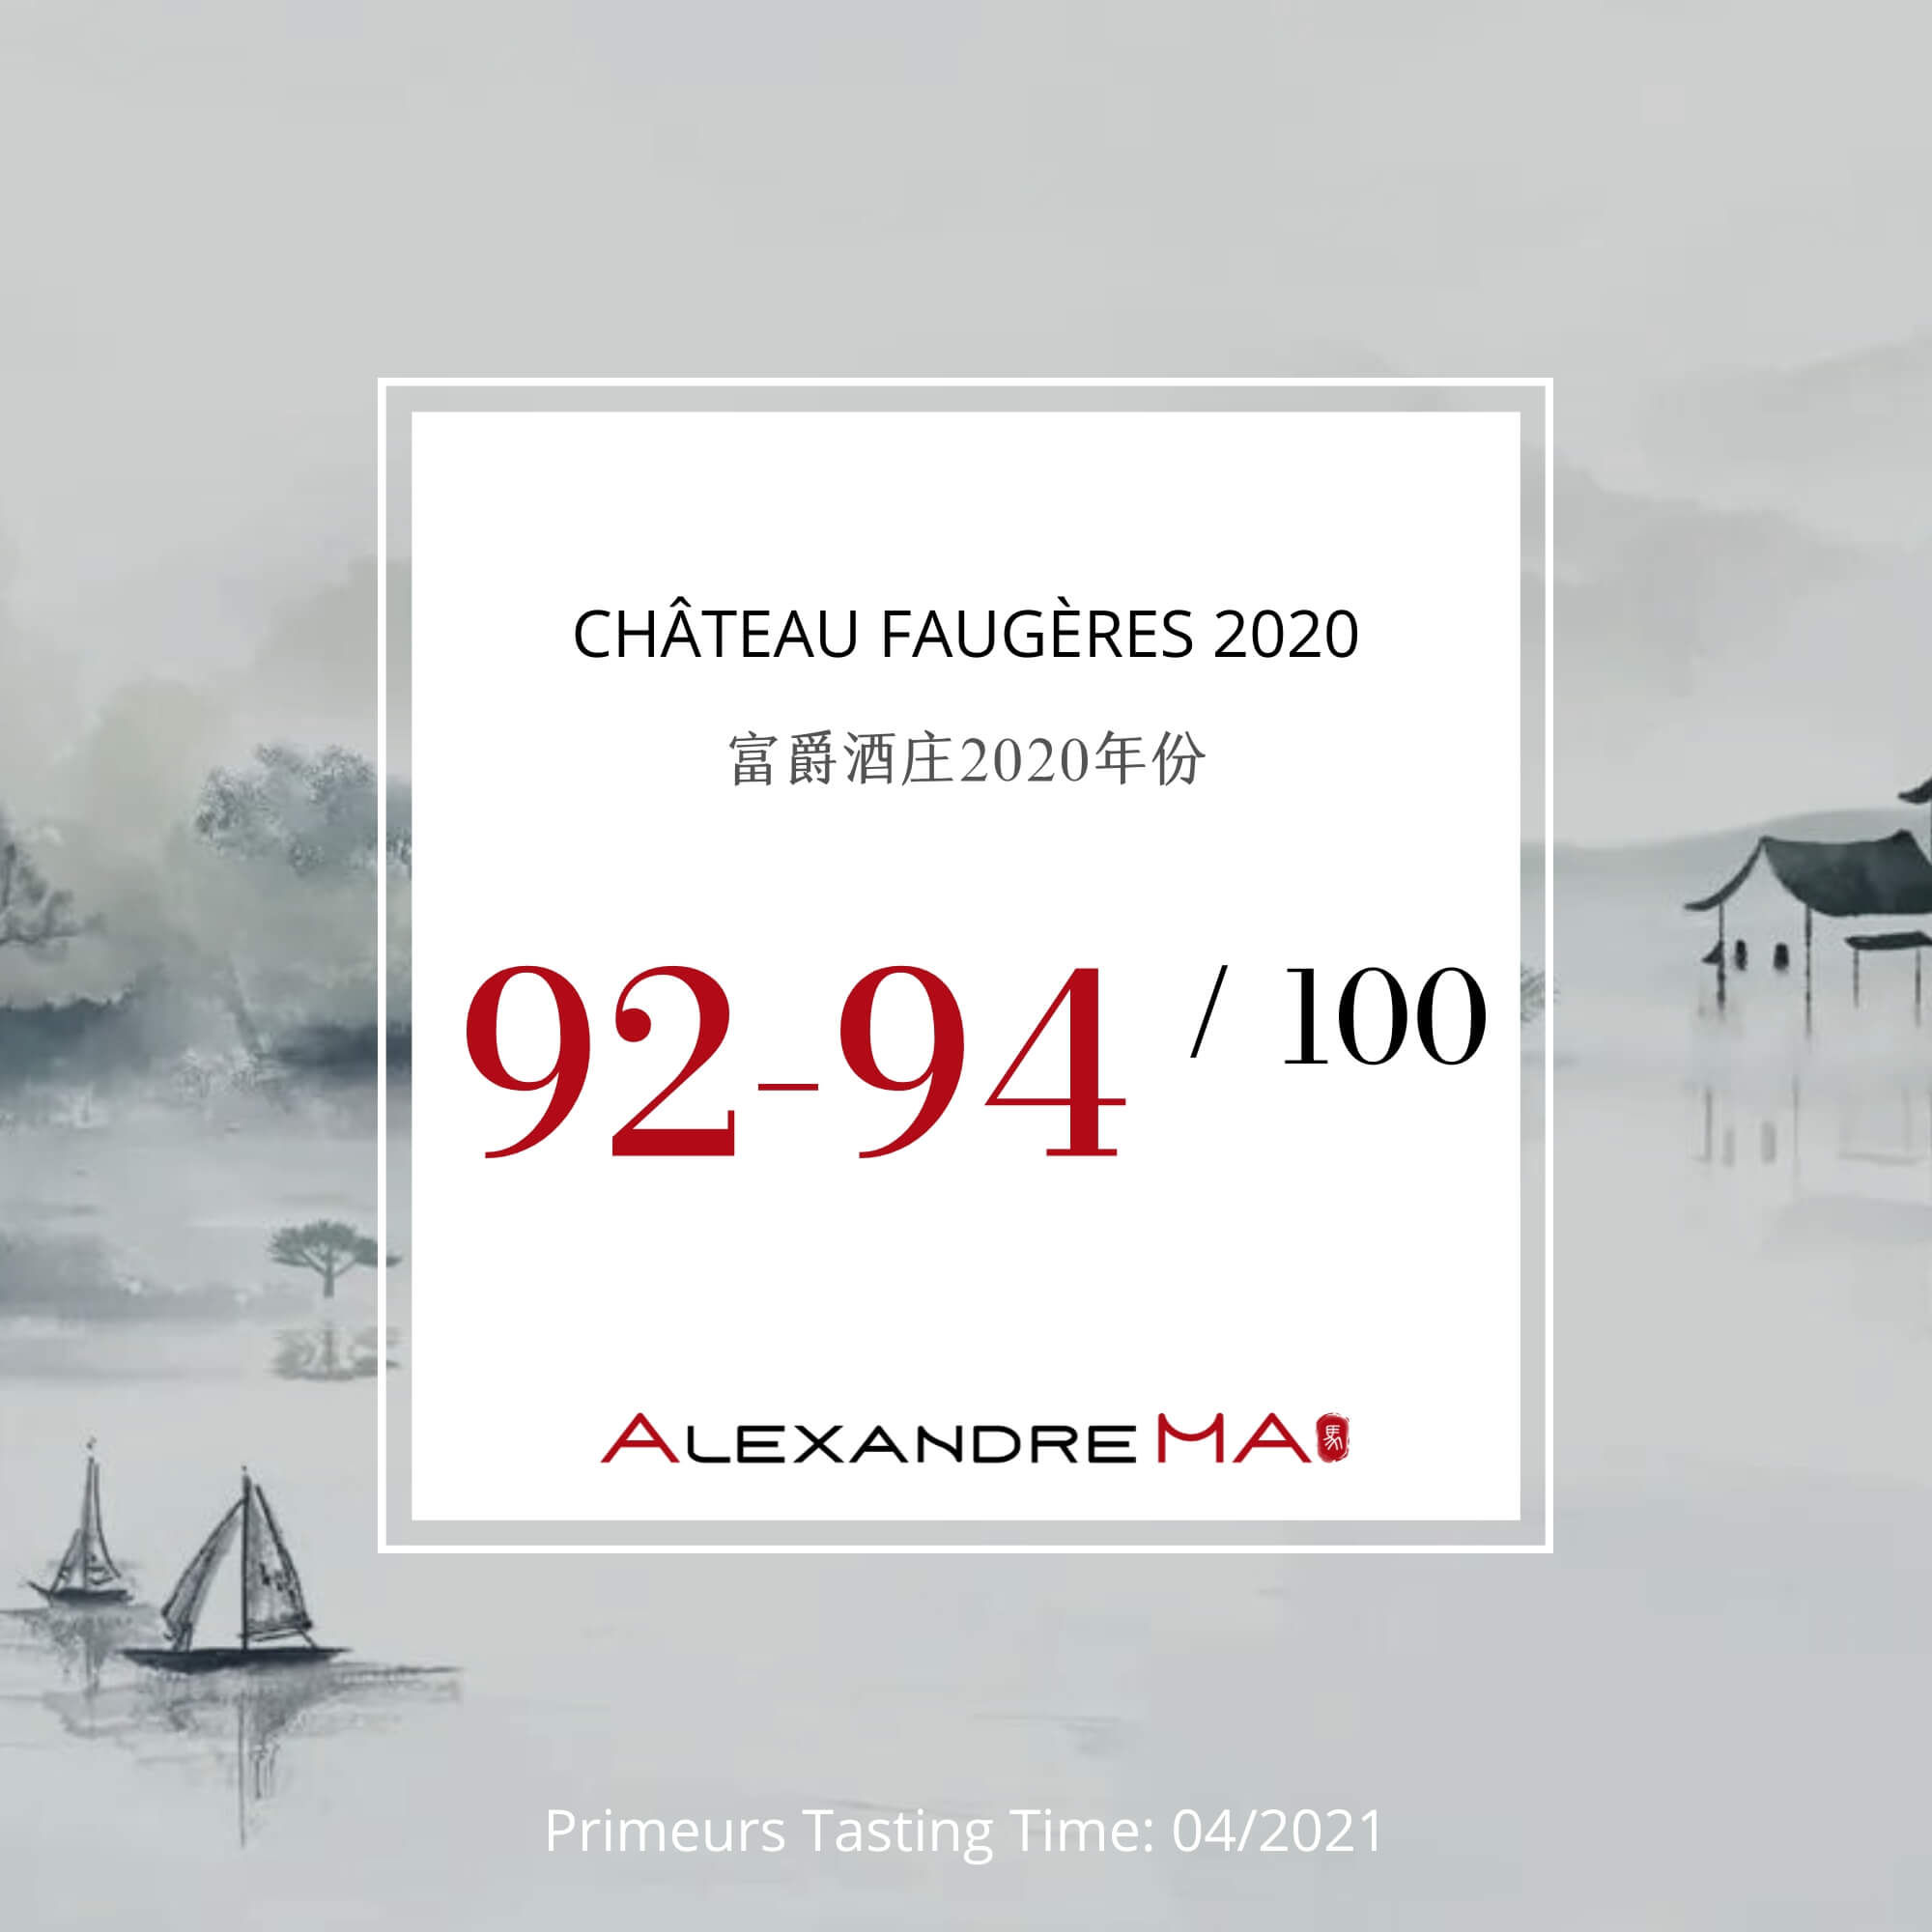 Château Faugères 2020 - Alexandre MA